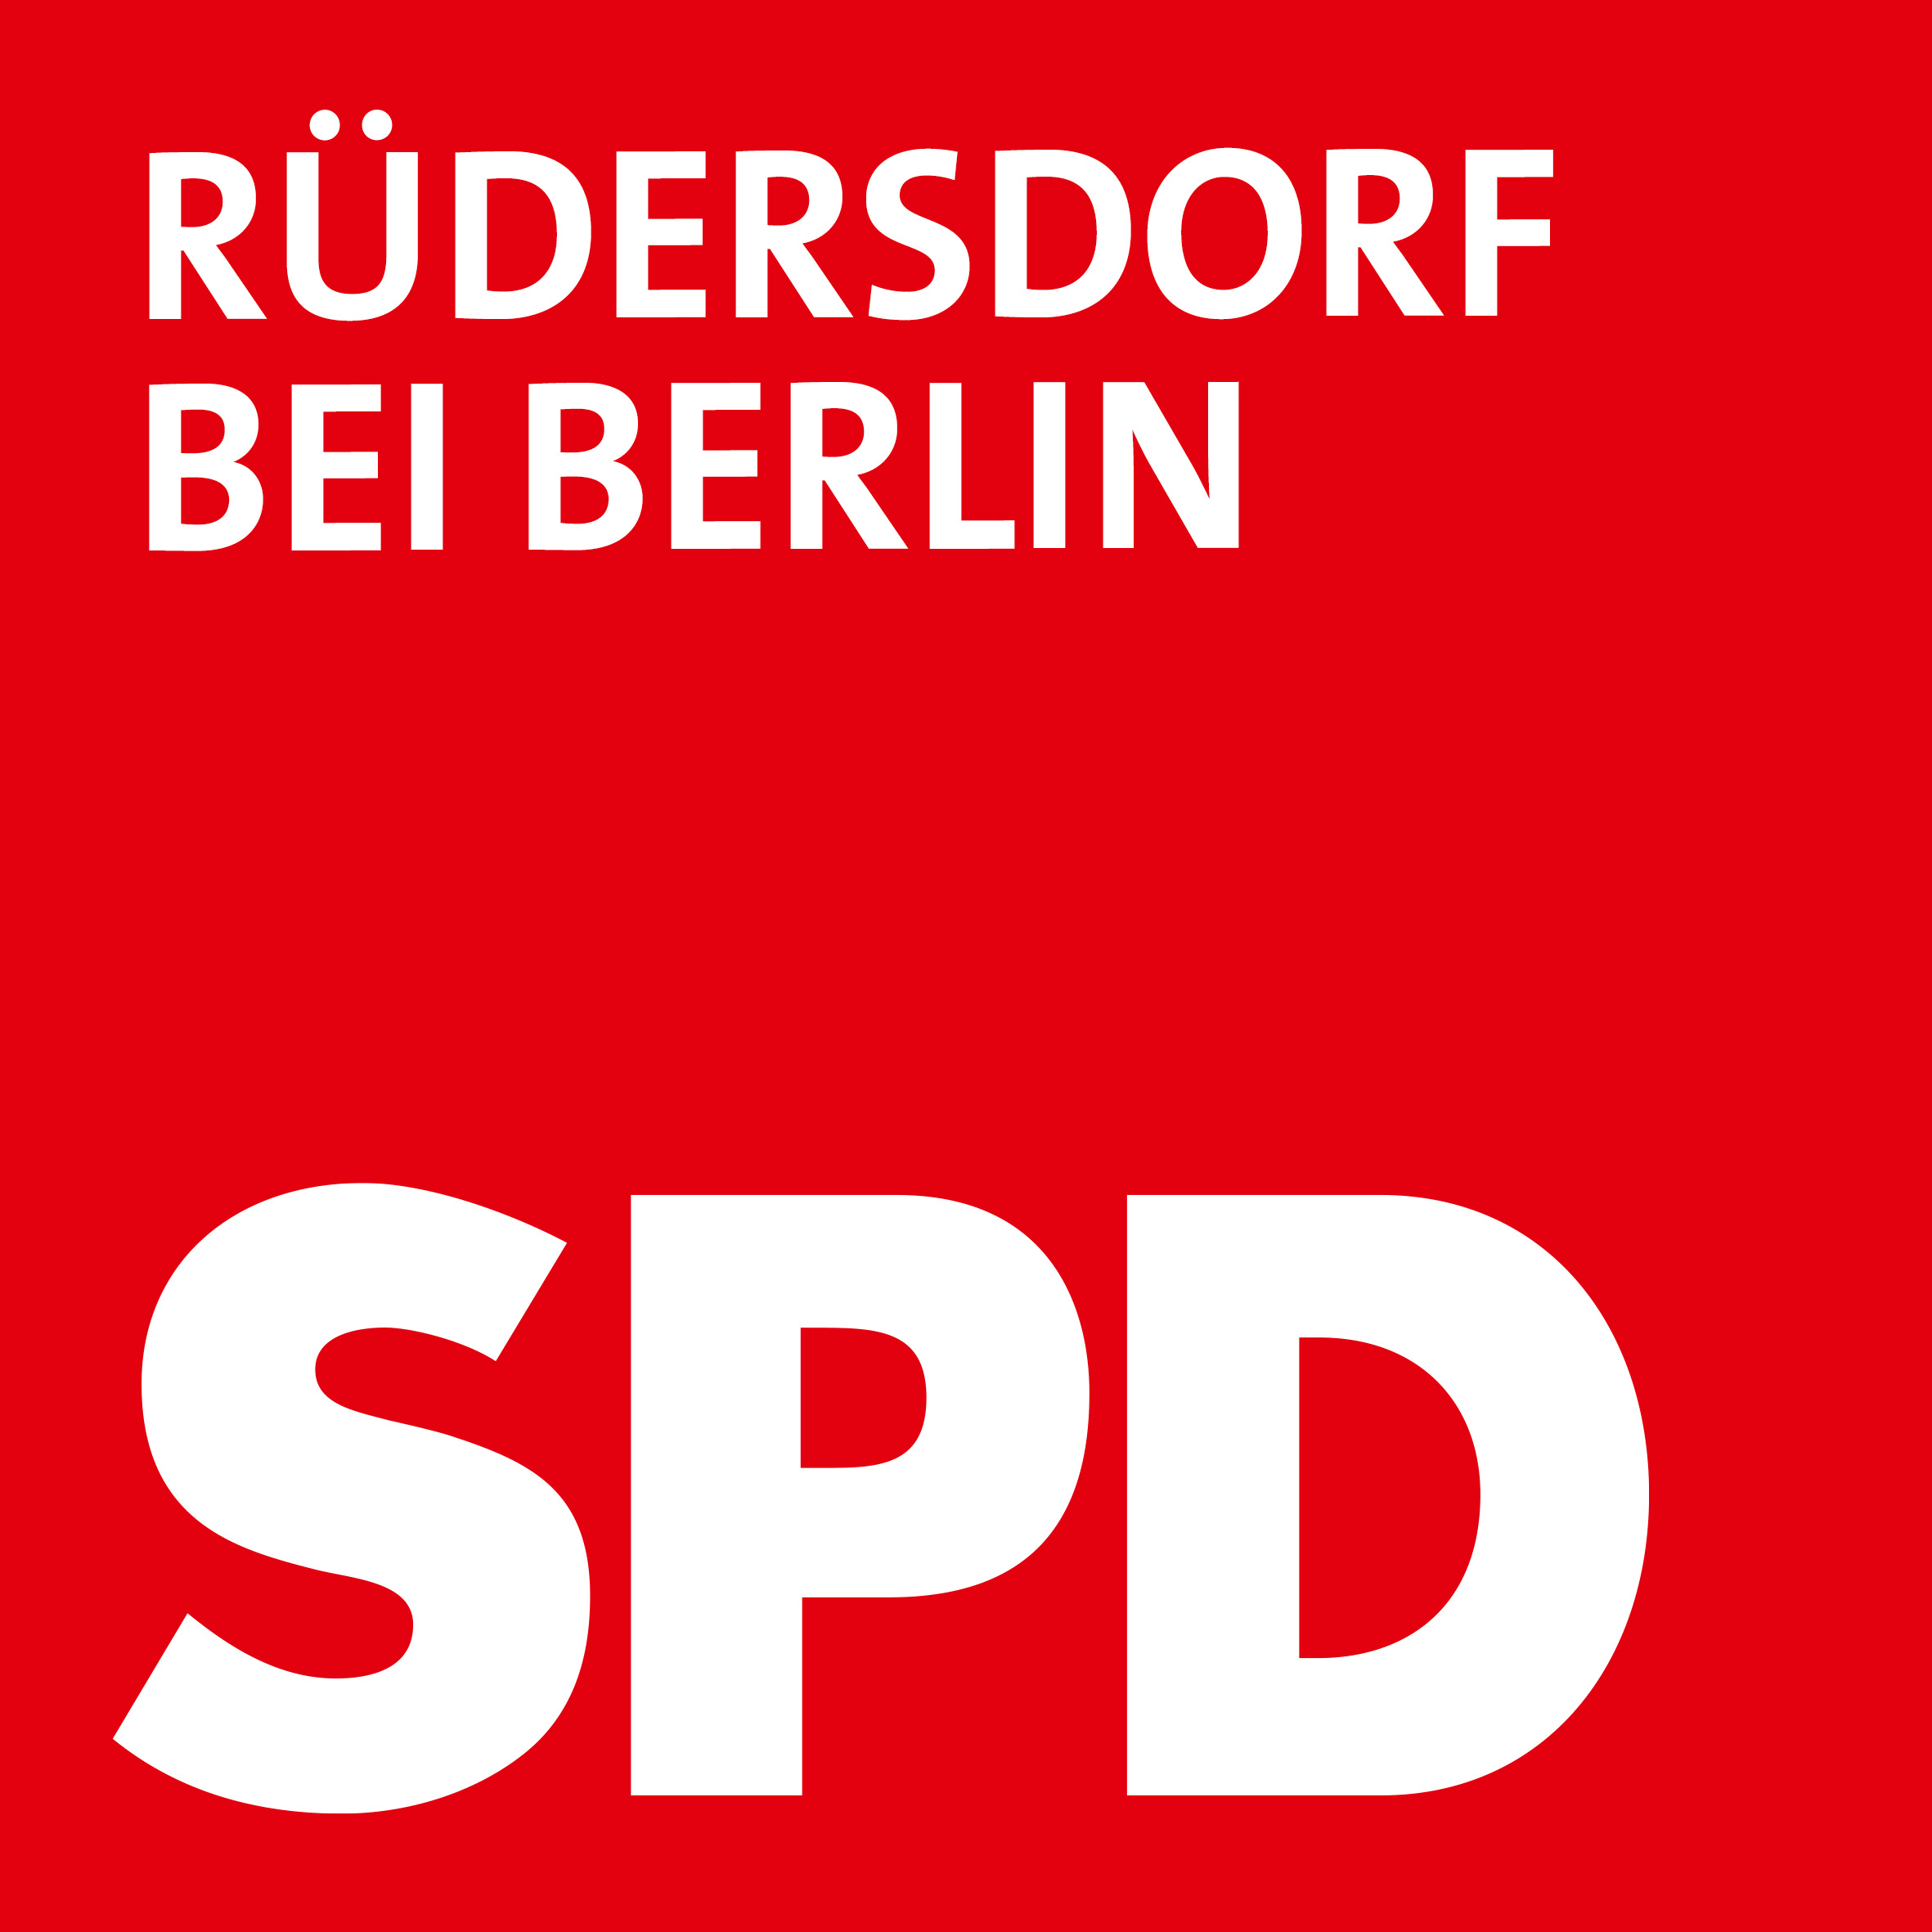 SPD Rüdersdorf bei Berlin